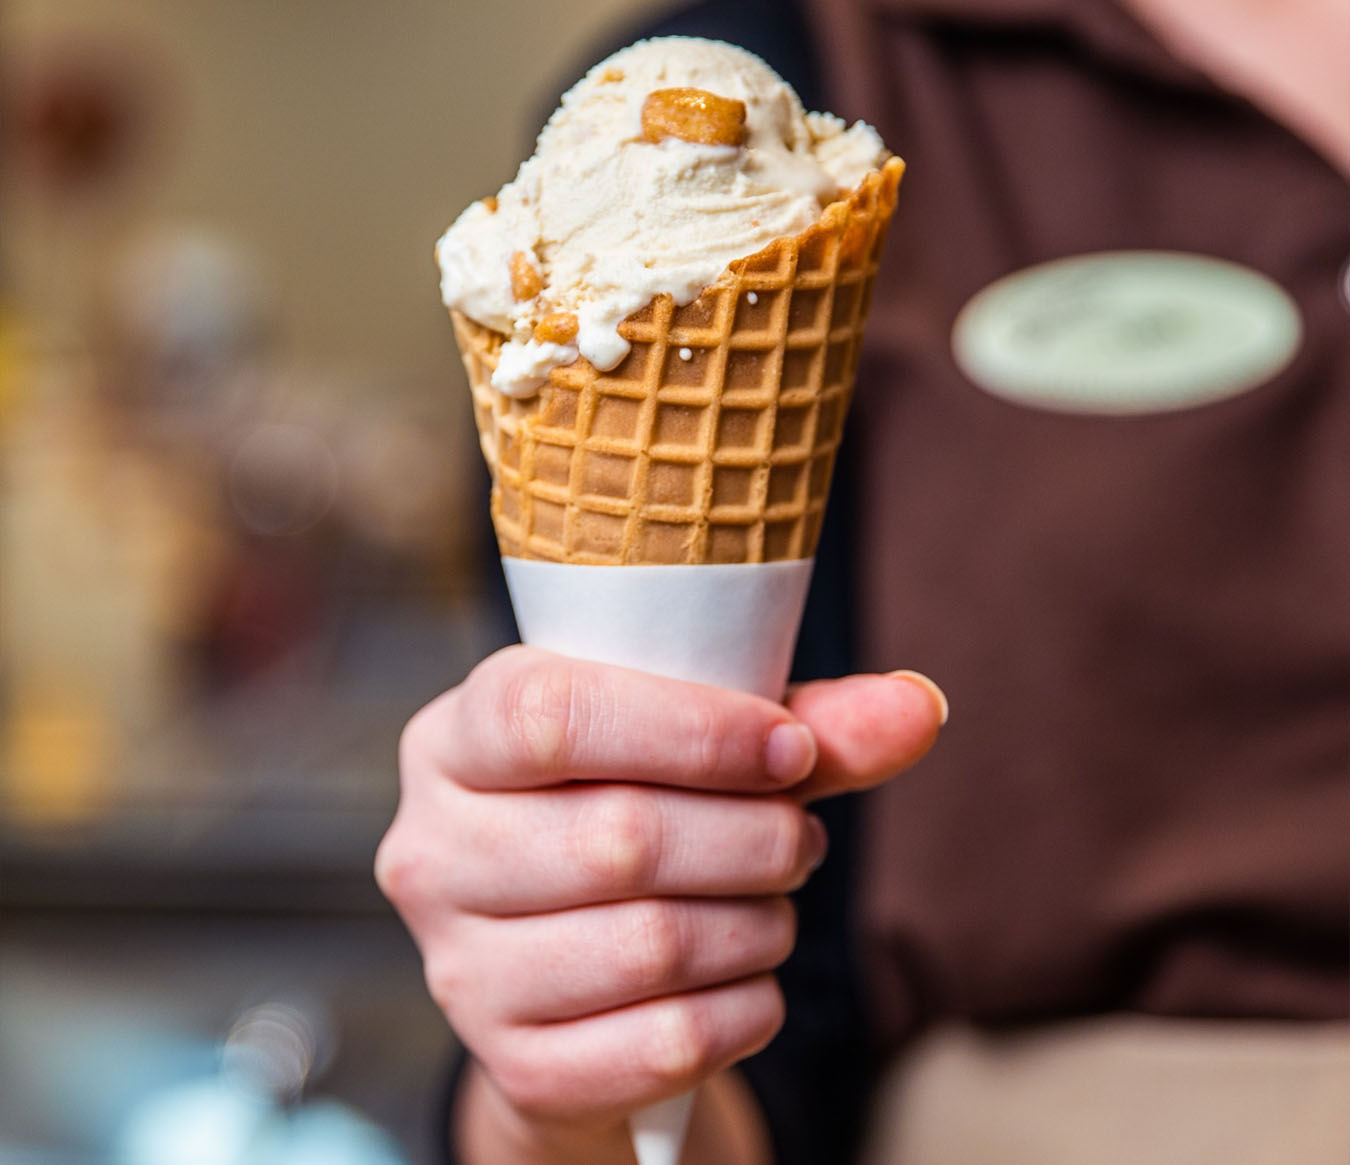 Where To Eat In Cincinnati - Graeter's Ice Cream